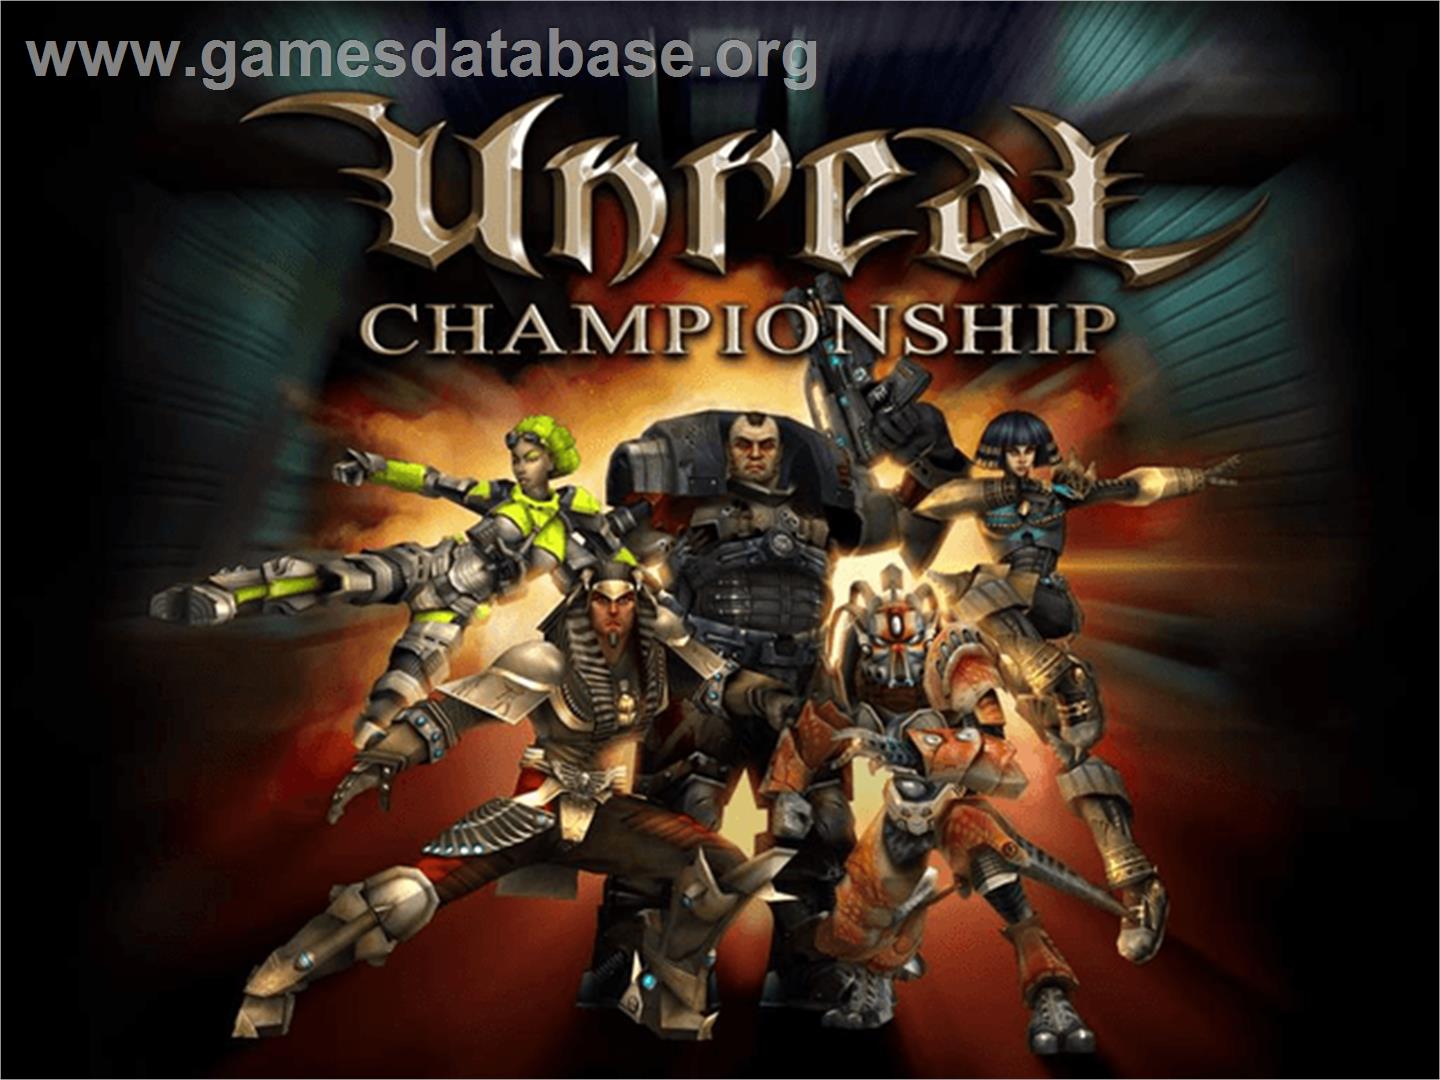 Unreal Championship - Microsoft Xbox - Artwork - Title Screen